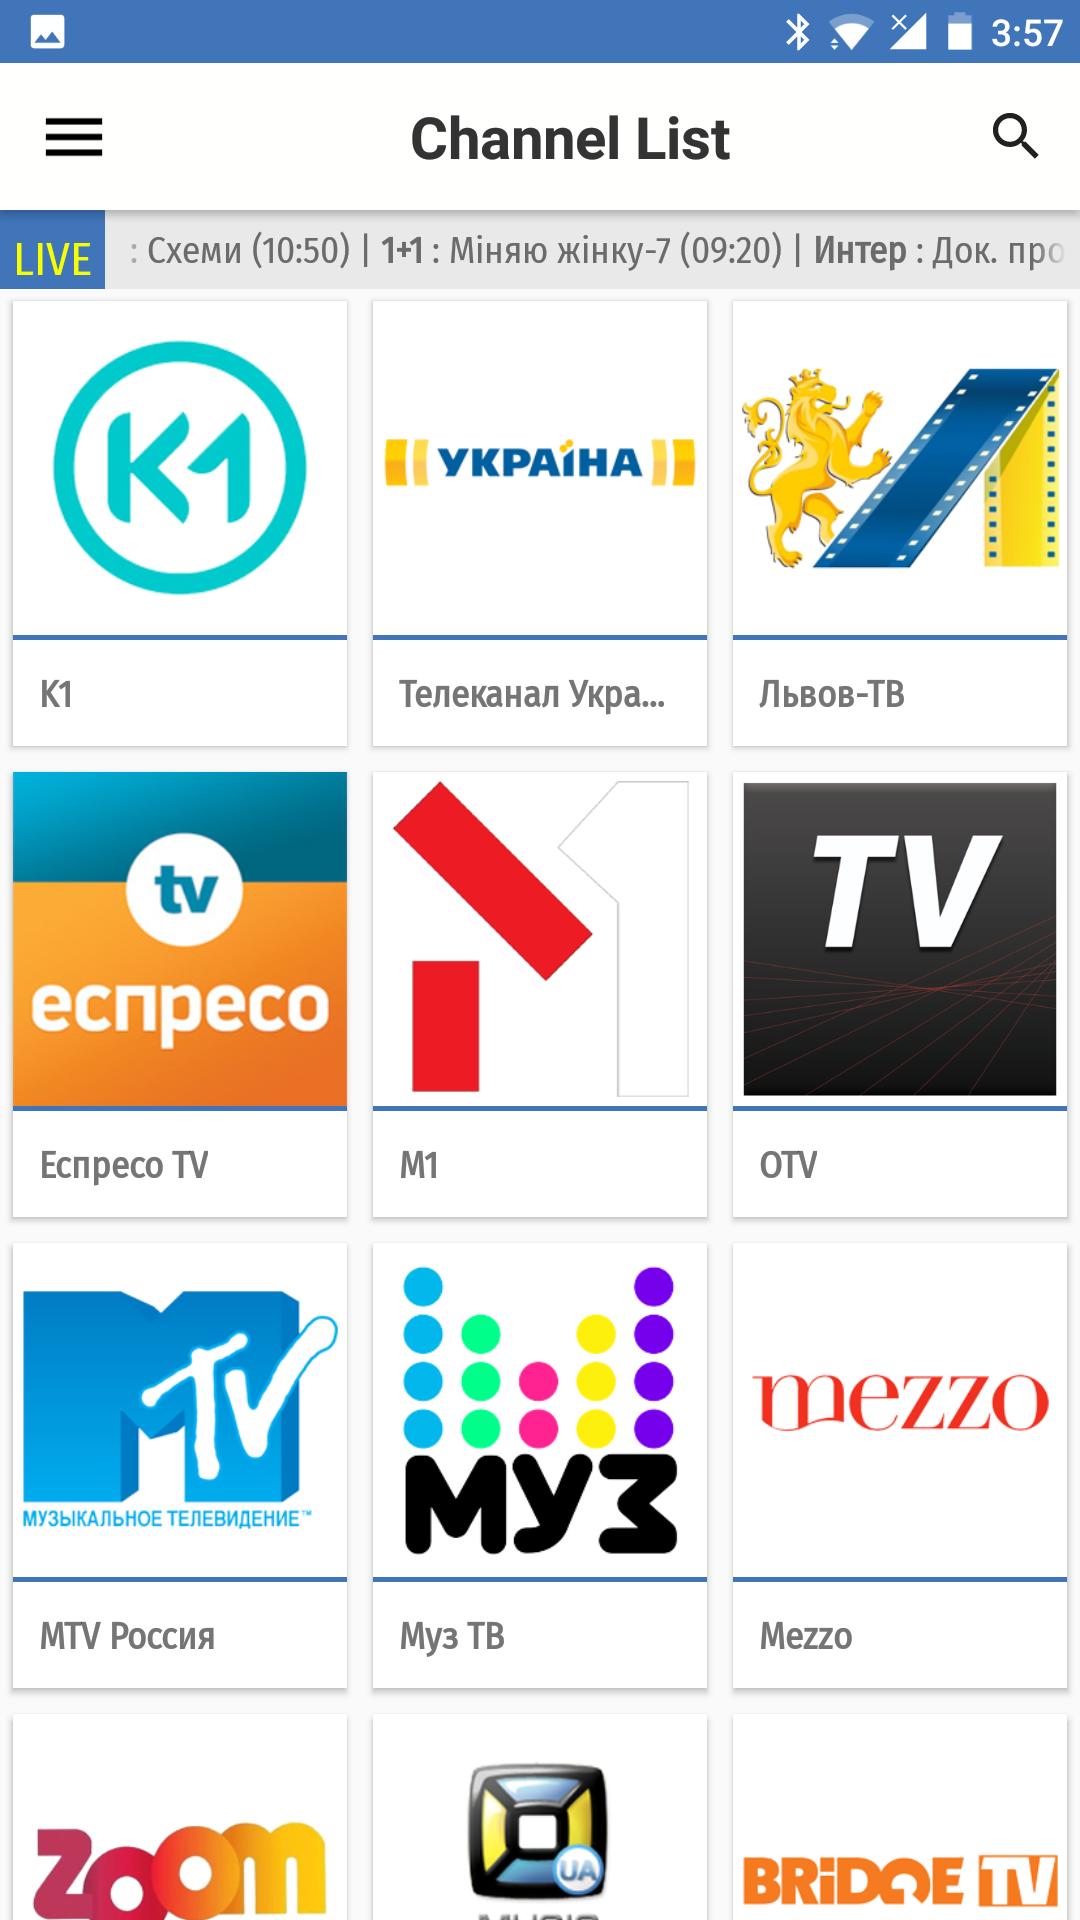 Украинский канал сегодня. ТВ каналы. Украина ТВ. ТВ каналы Украины. Украинские каналы ТВ.